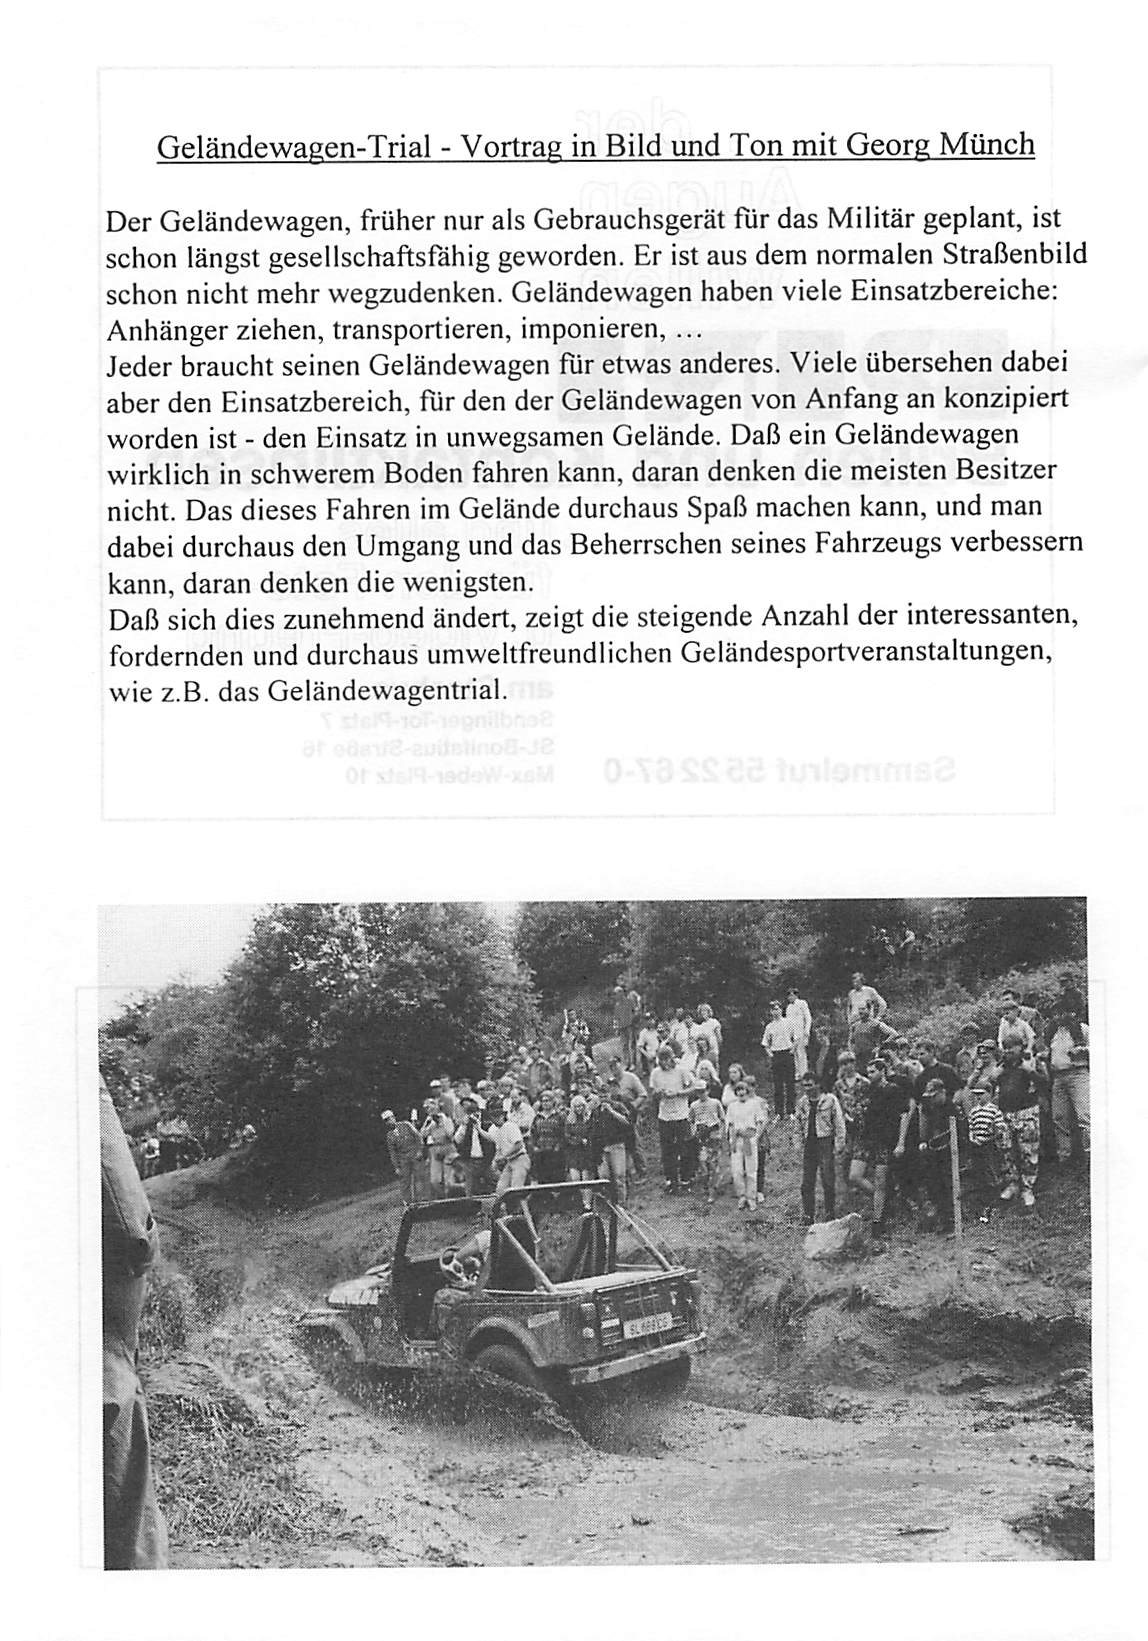 Geländewagen-Trial - Vortrag in Bild und Ton mit Georg Münch Der Geländewagen, früher nur als Gebrauchsgerät für das Militär geplant, ist schon längst gesellschaftsfähig geworden.